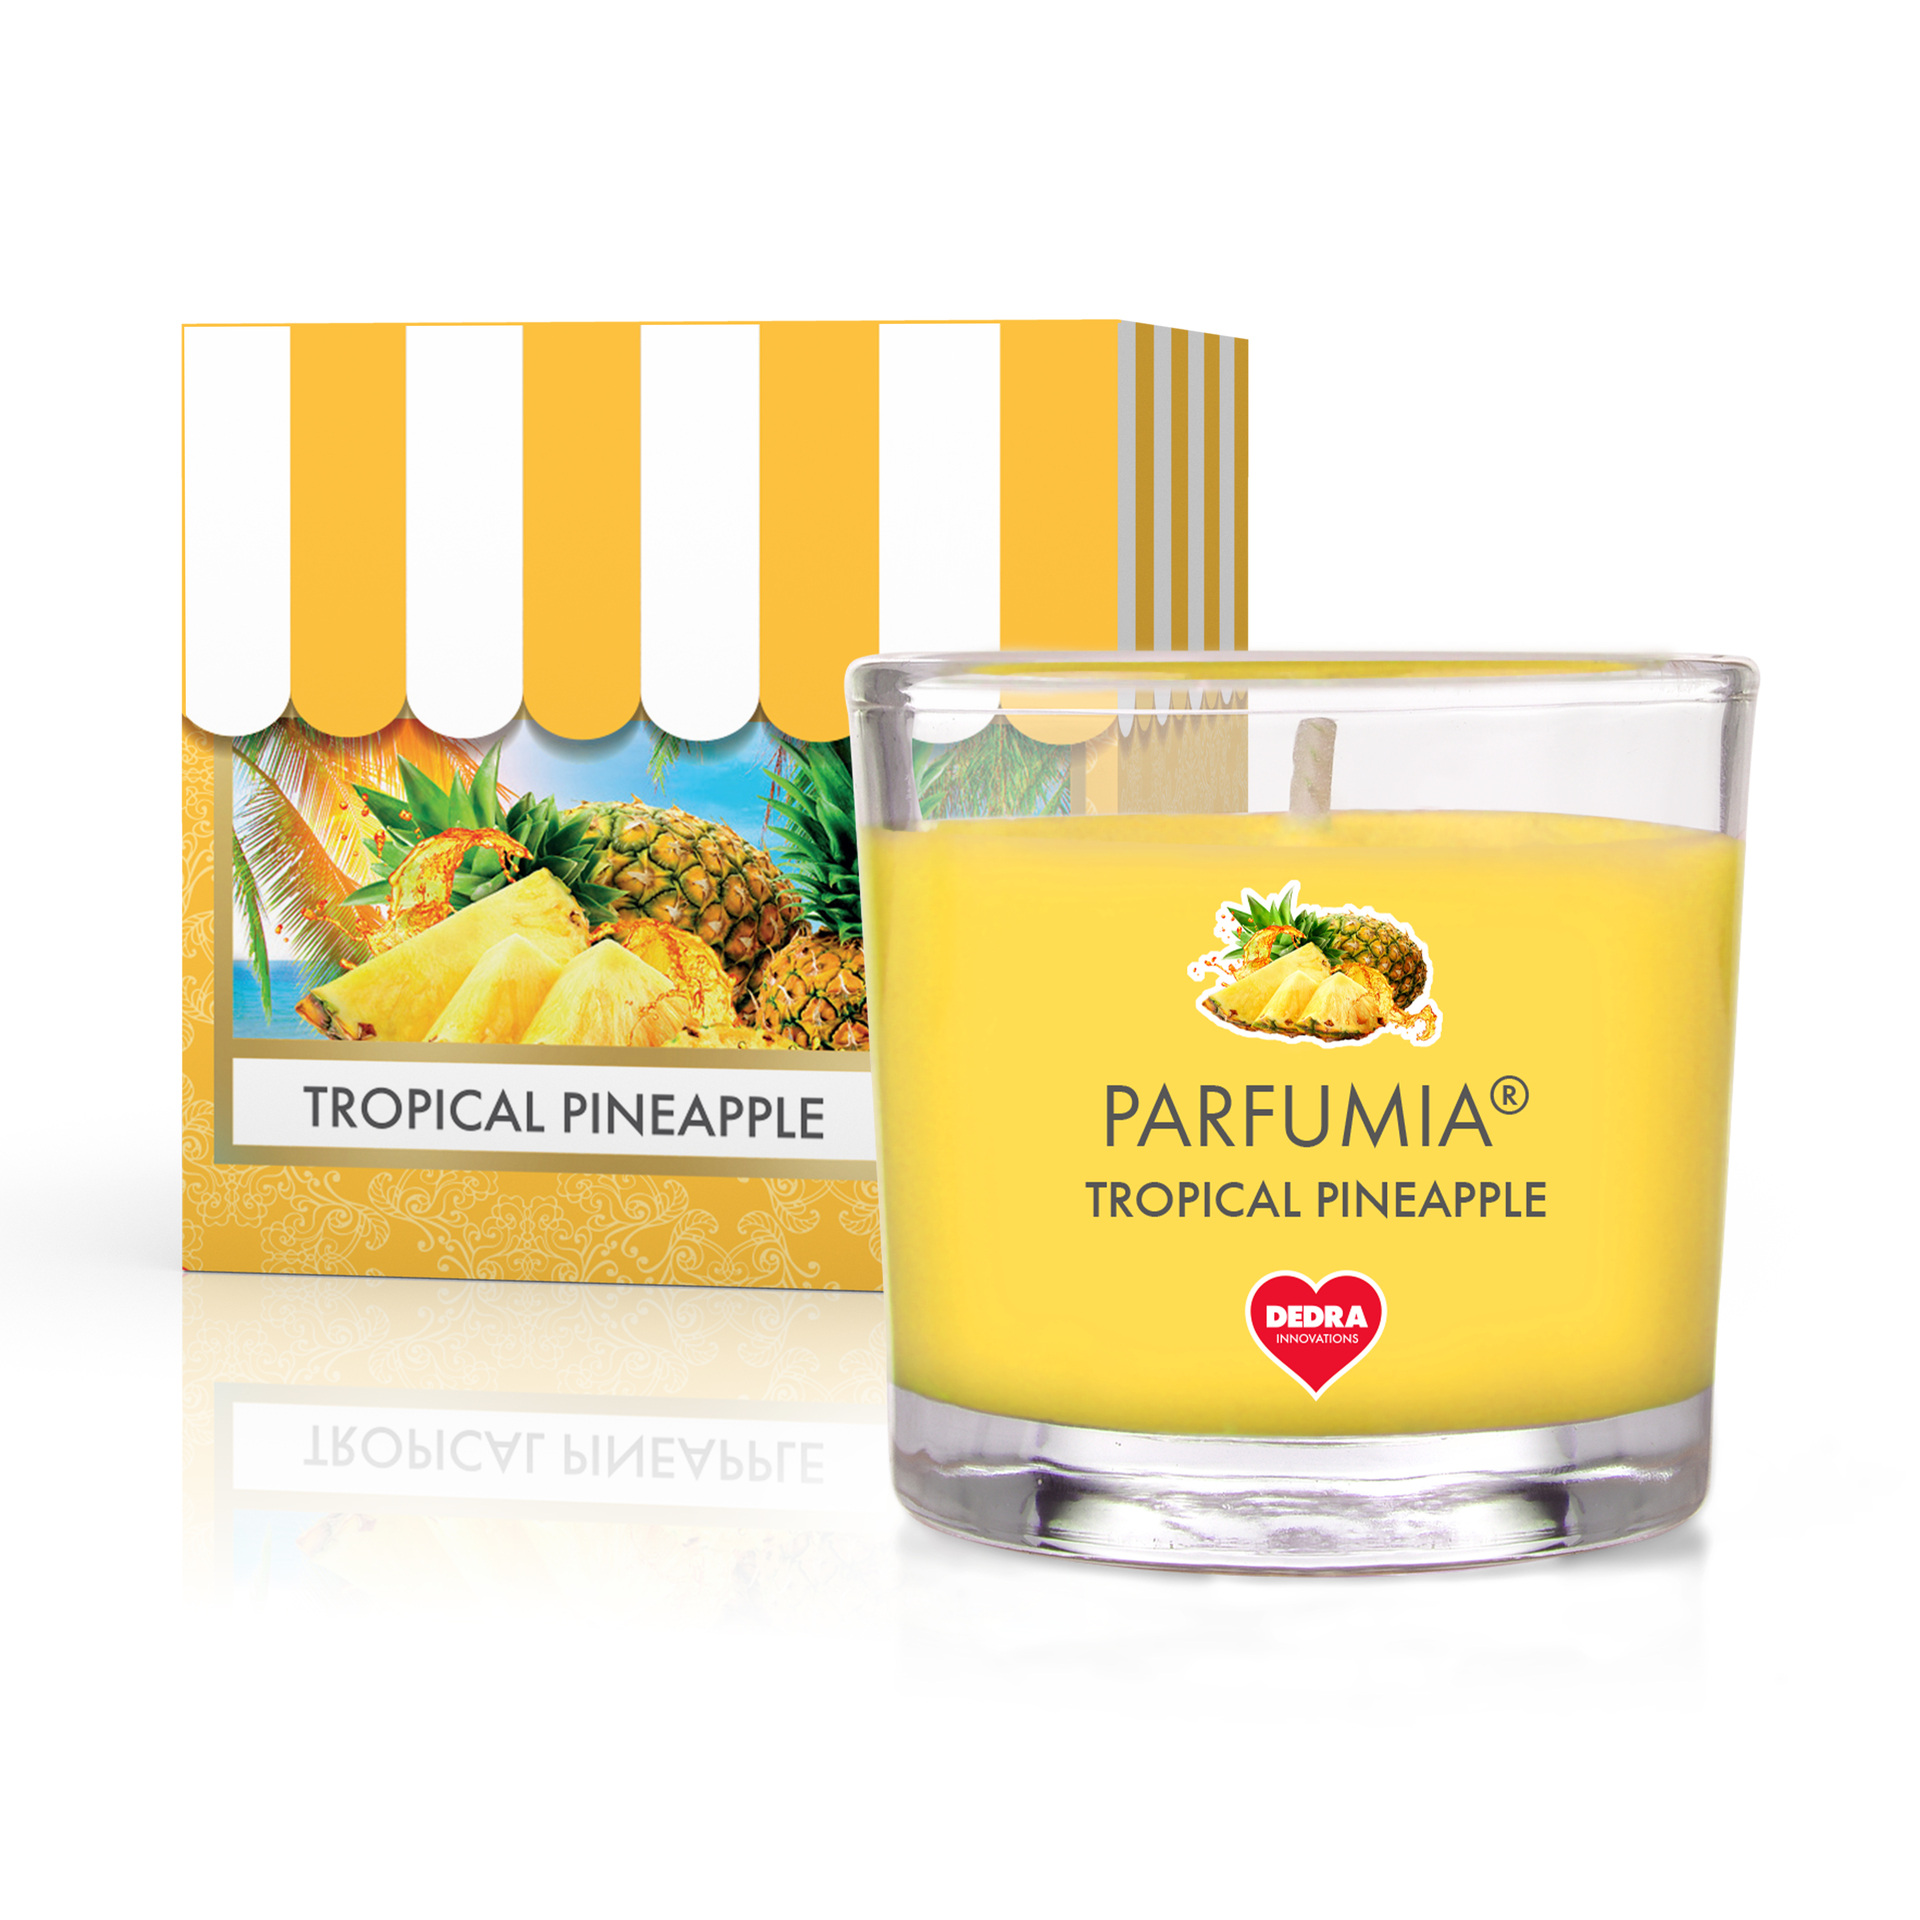 Votivní sójová vonná EKO svíce PARFUMIA®,  tropický ananas TROPICAL PINEAPPLE